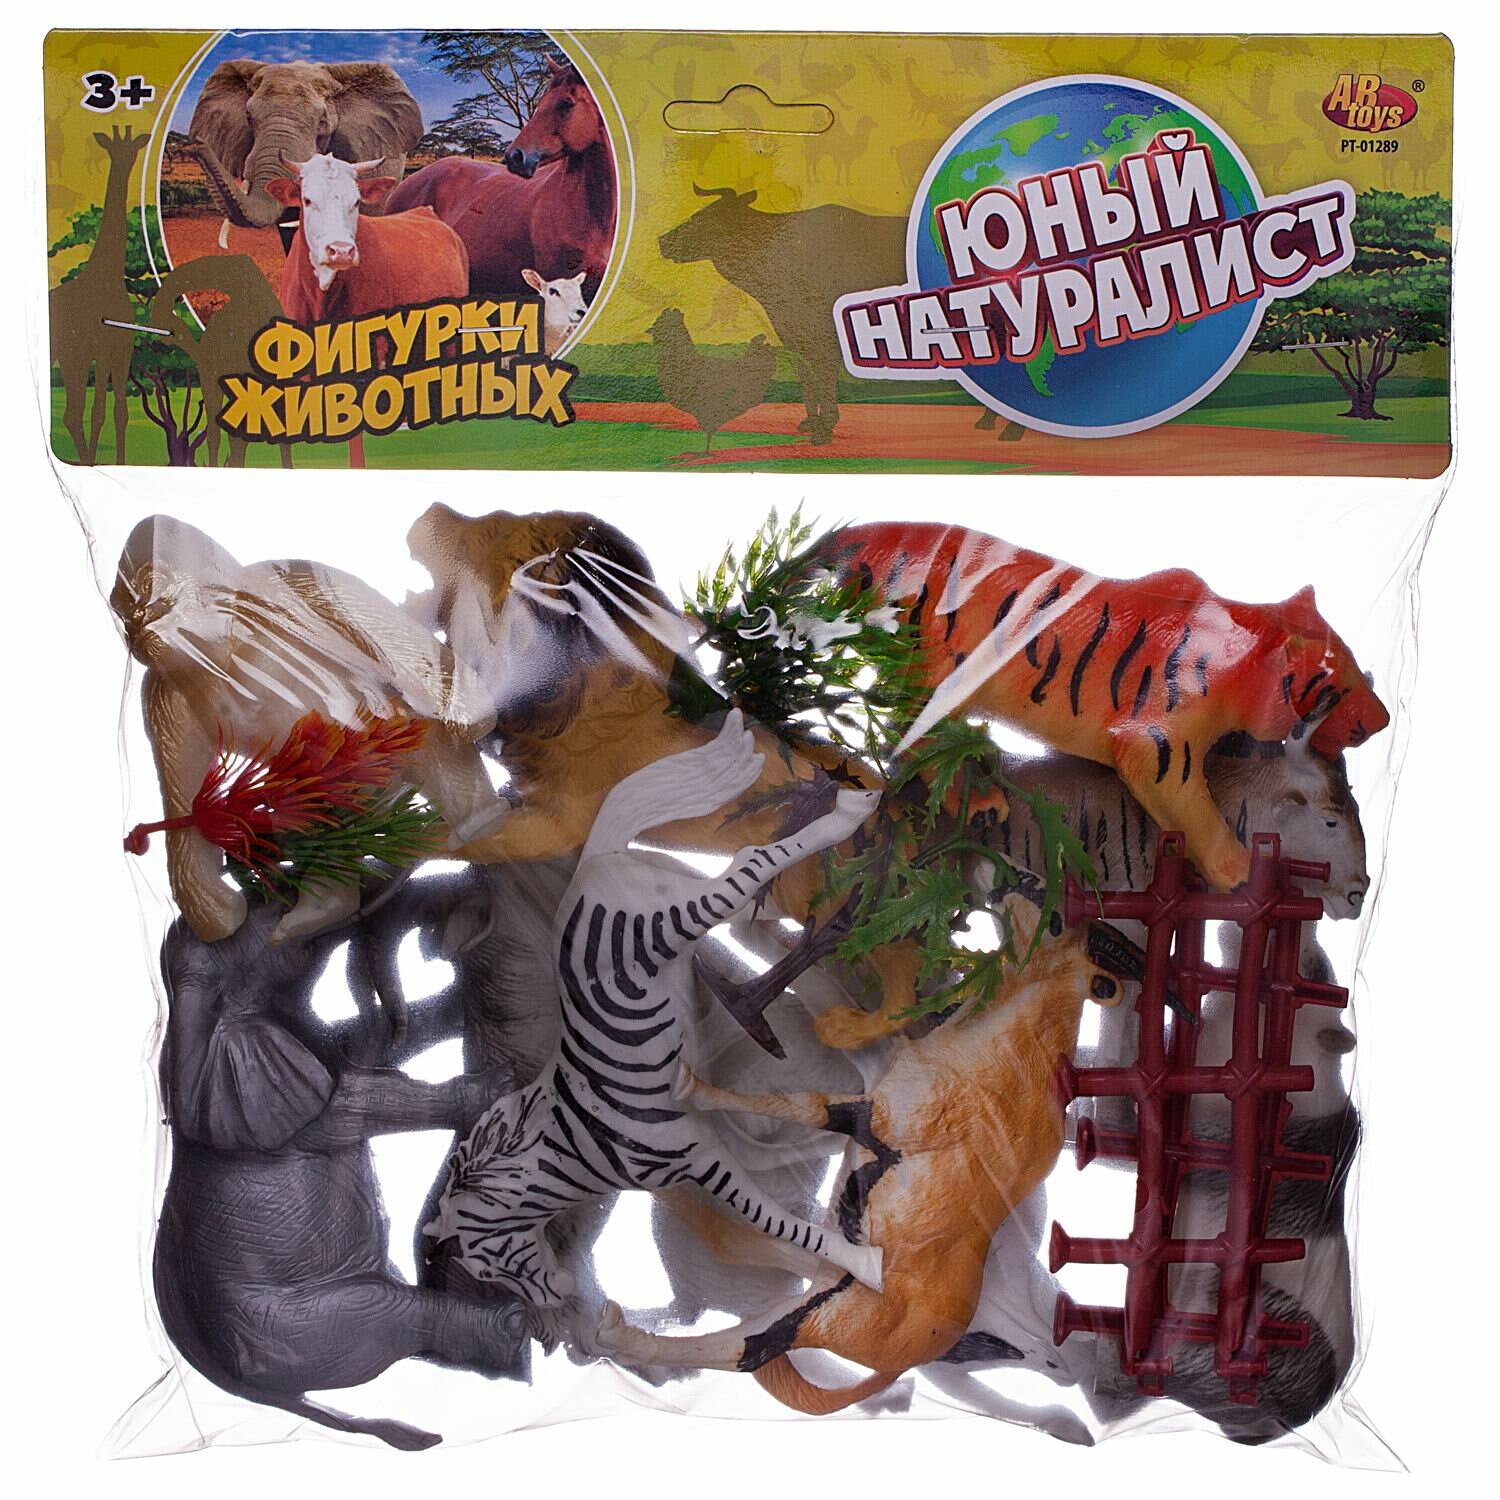 Игровой набор ABtoys Юный натуралист Фигурки животных с акссесуарами, в ассортименте 2 вида PT-01289